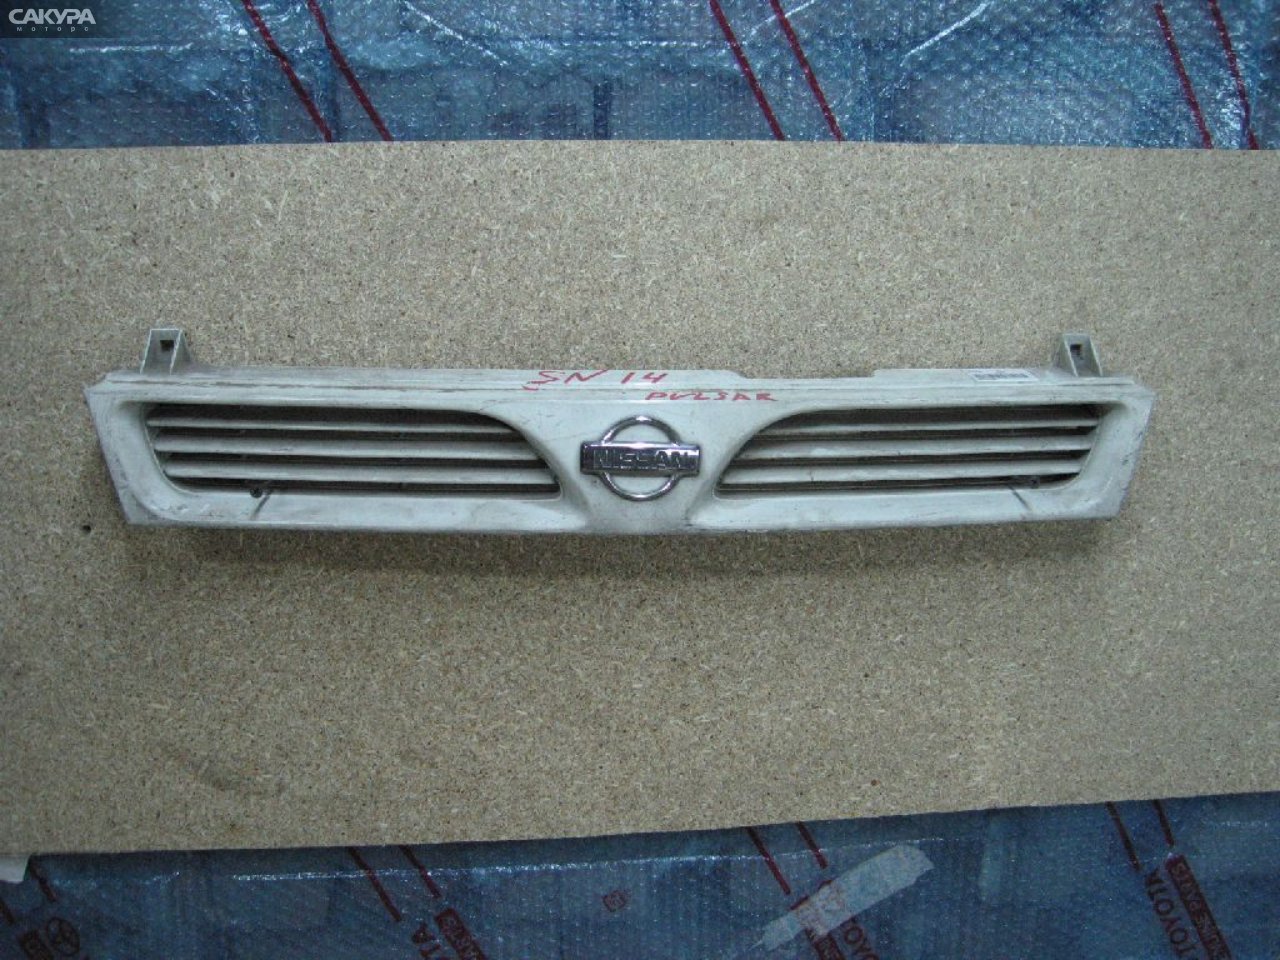 Решетка радиатора Nissan Pulsar FN14: купить в Сакура Абакан.